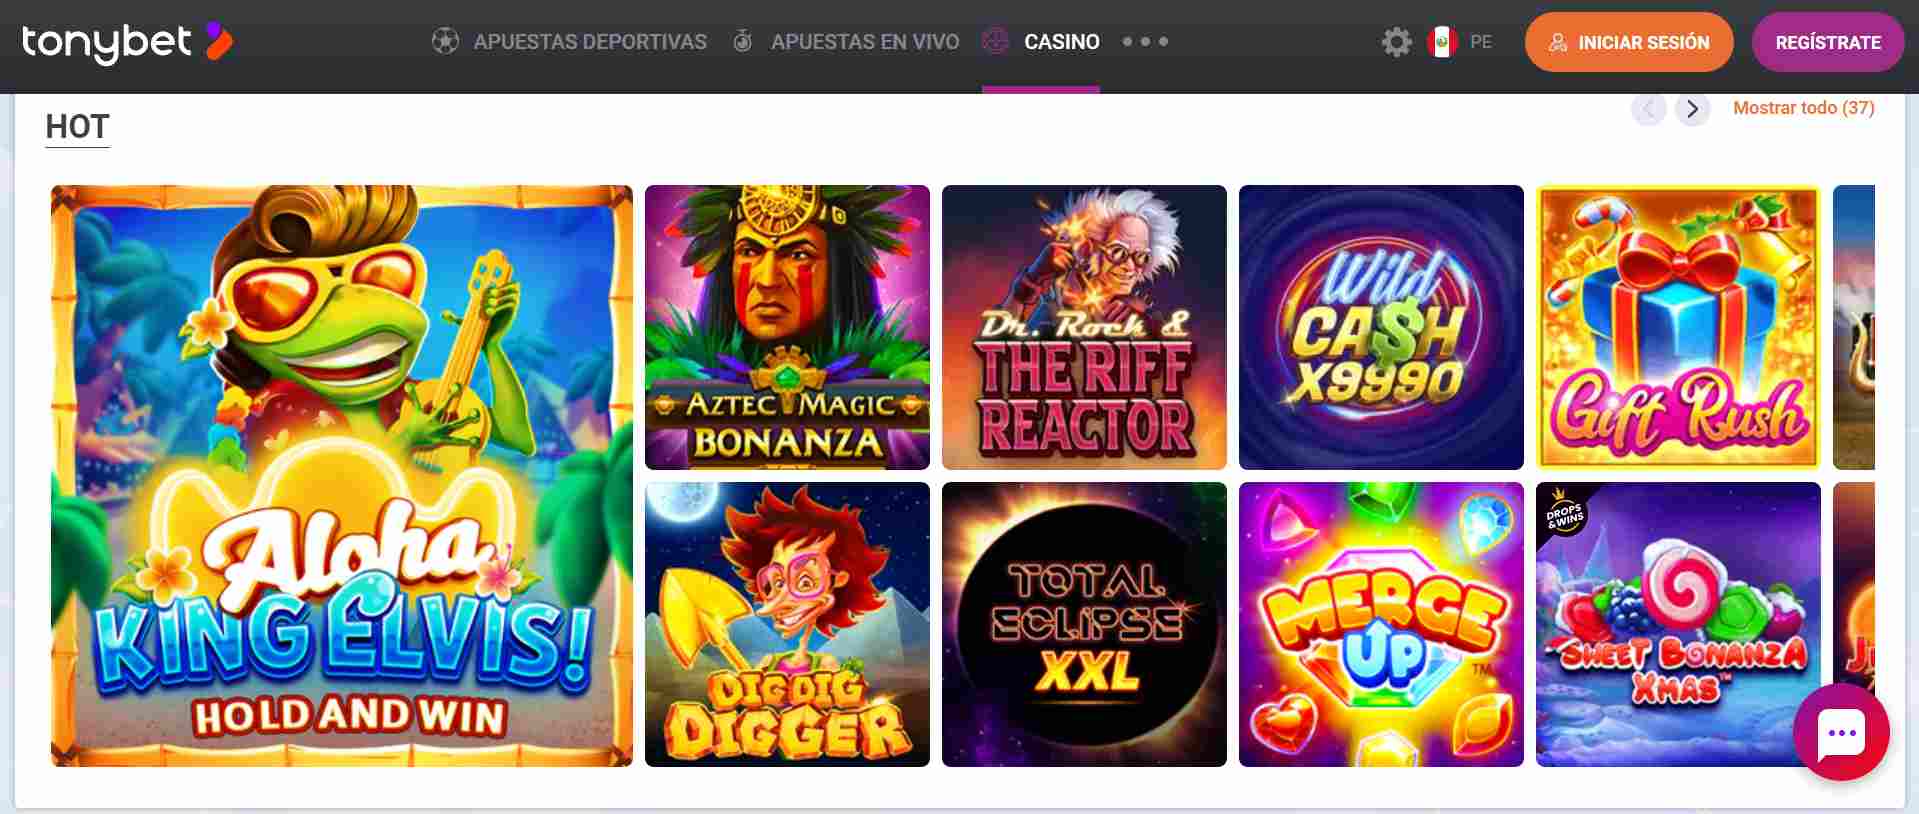 Juegos de casino Tonybet Perú